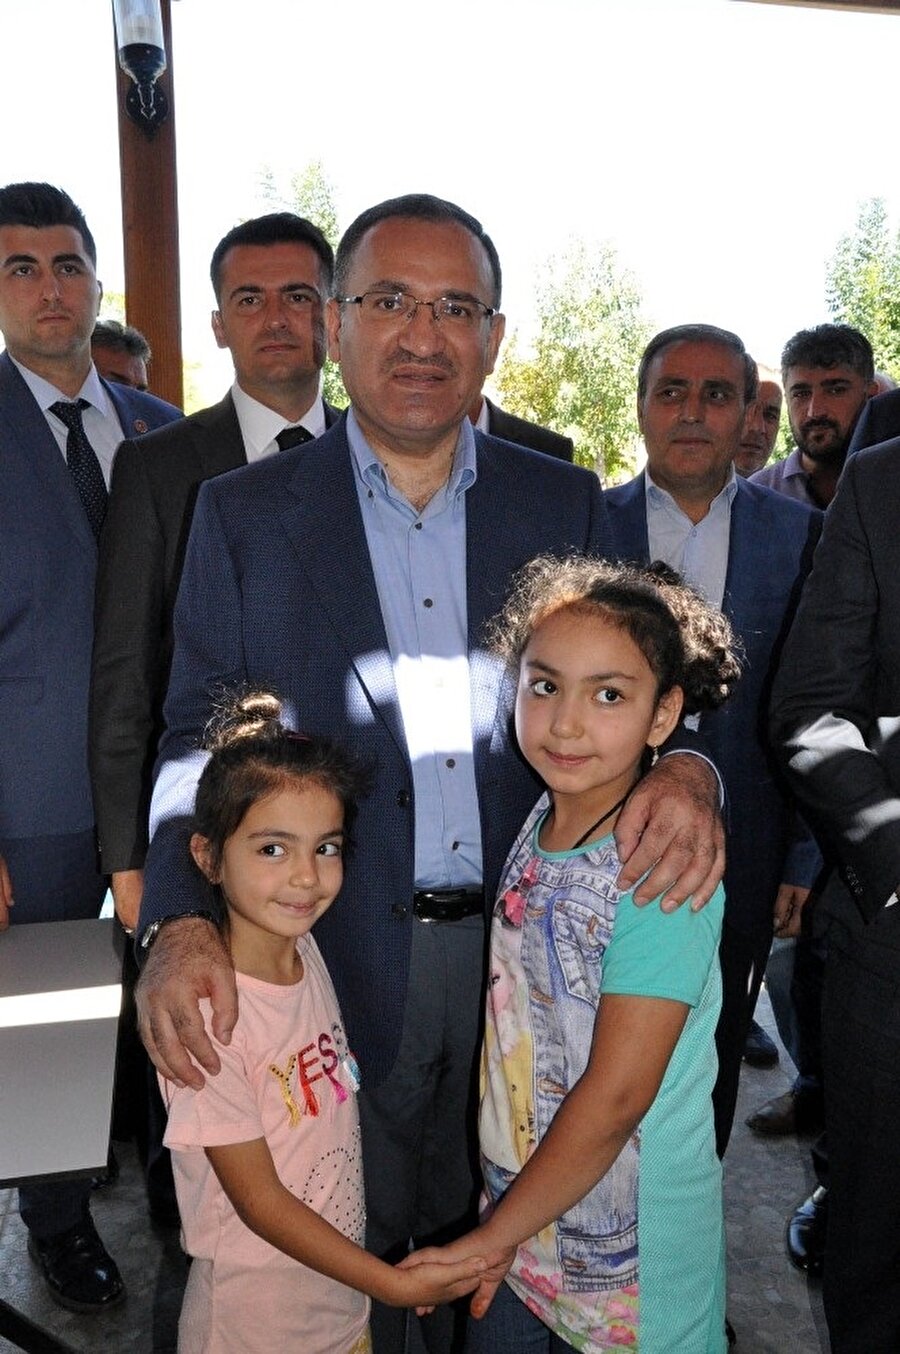 Başbakan Yardımcısı Bekir Bozdağ ile bayramlaşan çocuklar hatıra fotoğrafı çekilmeyi de ihmal etmedi.